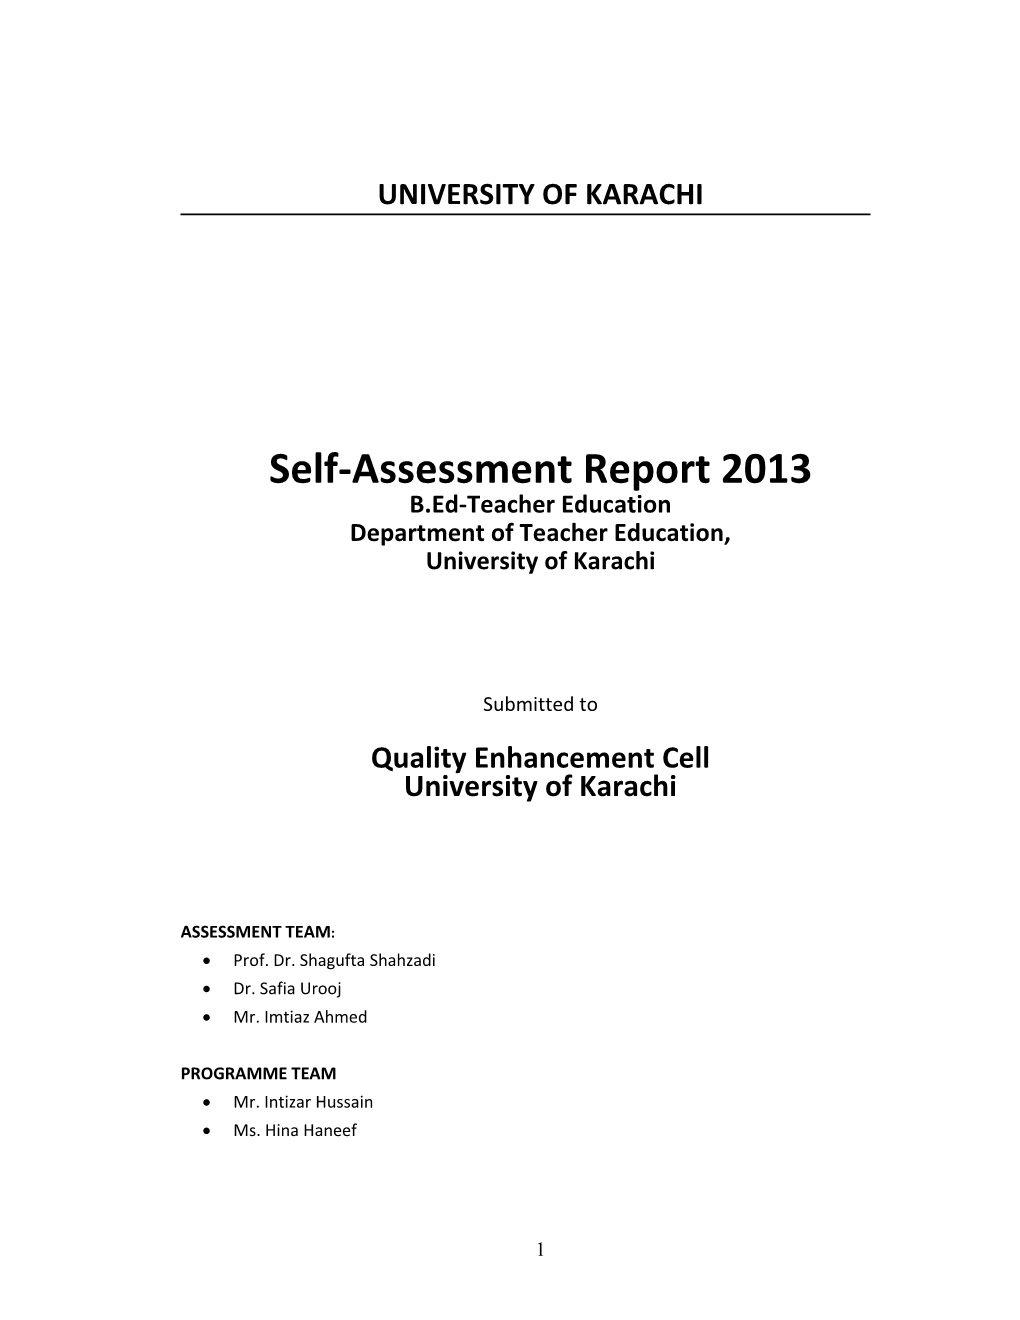 Self-Assessment Report 2013 B.Ed-Teacher Education Department of Teacher Education, University of Karachi